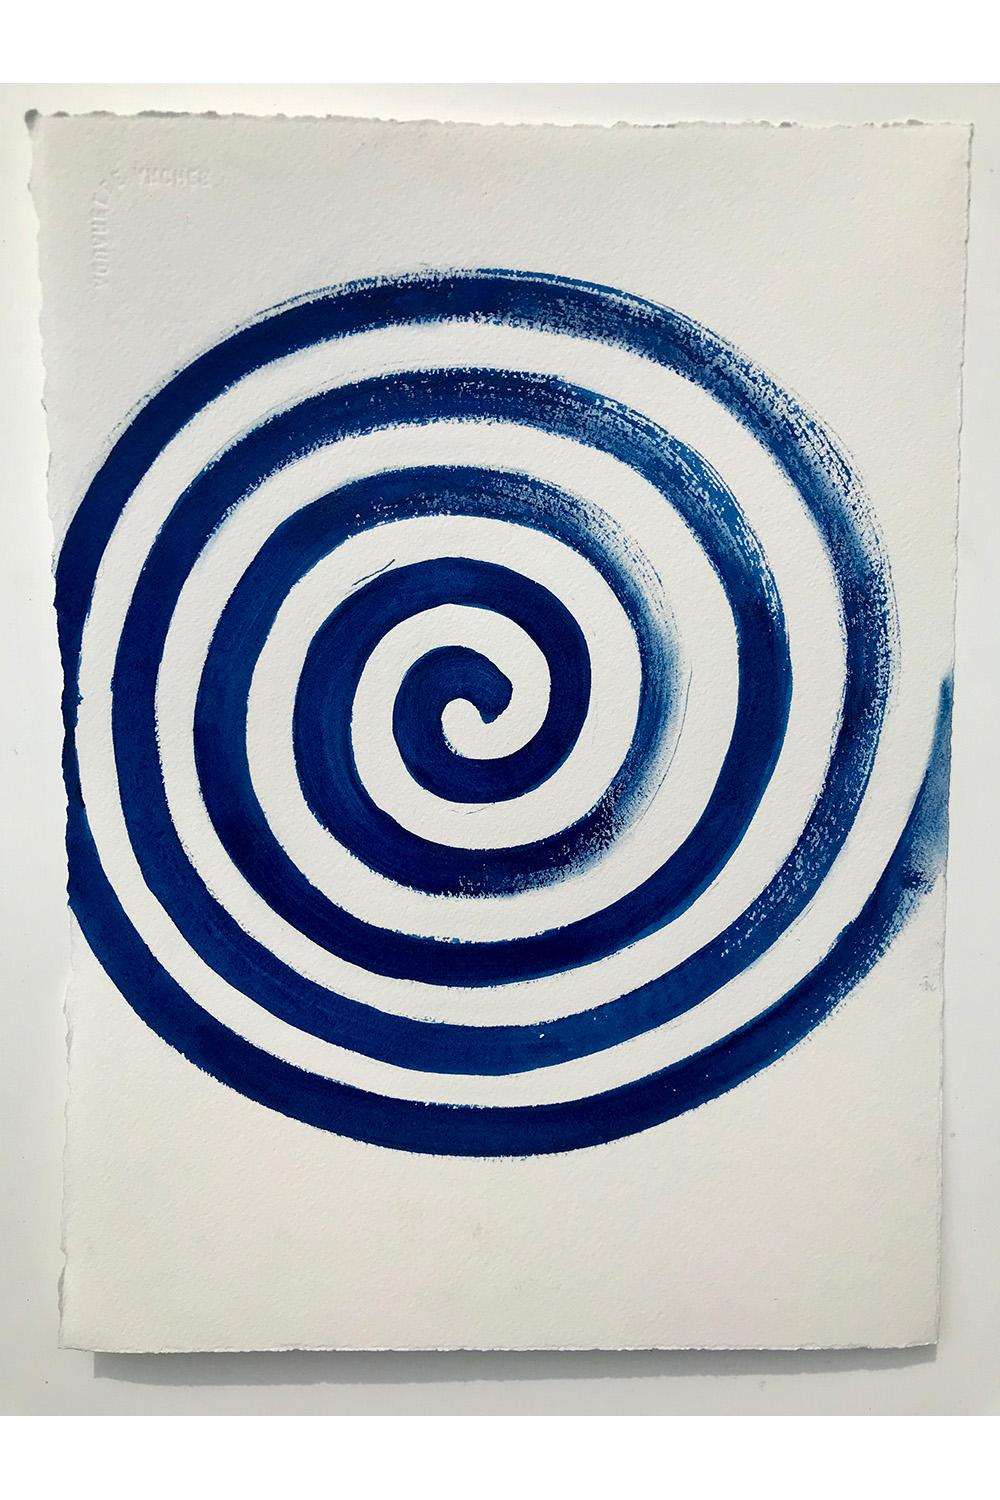 Matt Kinney Abstract Drawing – Life Spiral, Beacon, NY, 2020